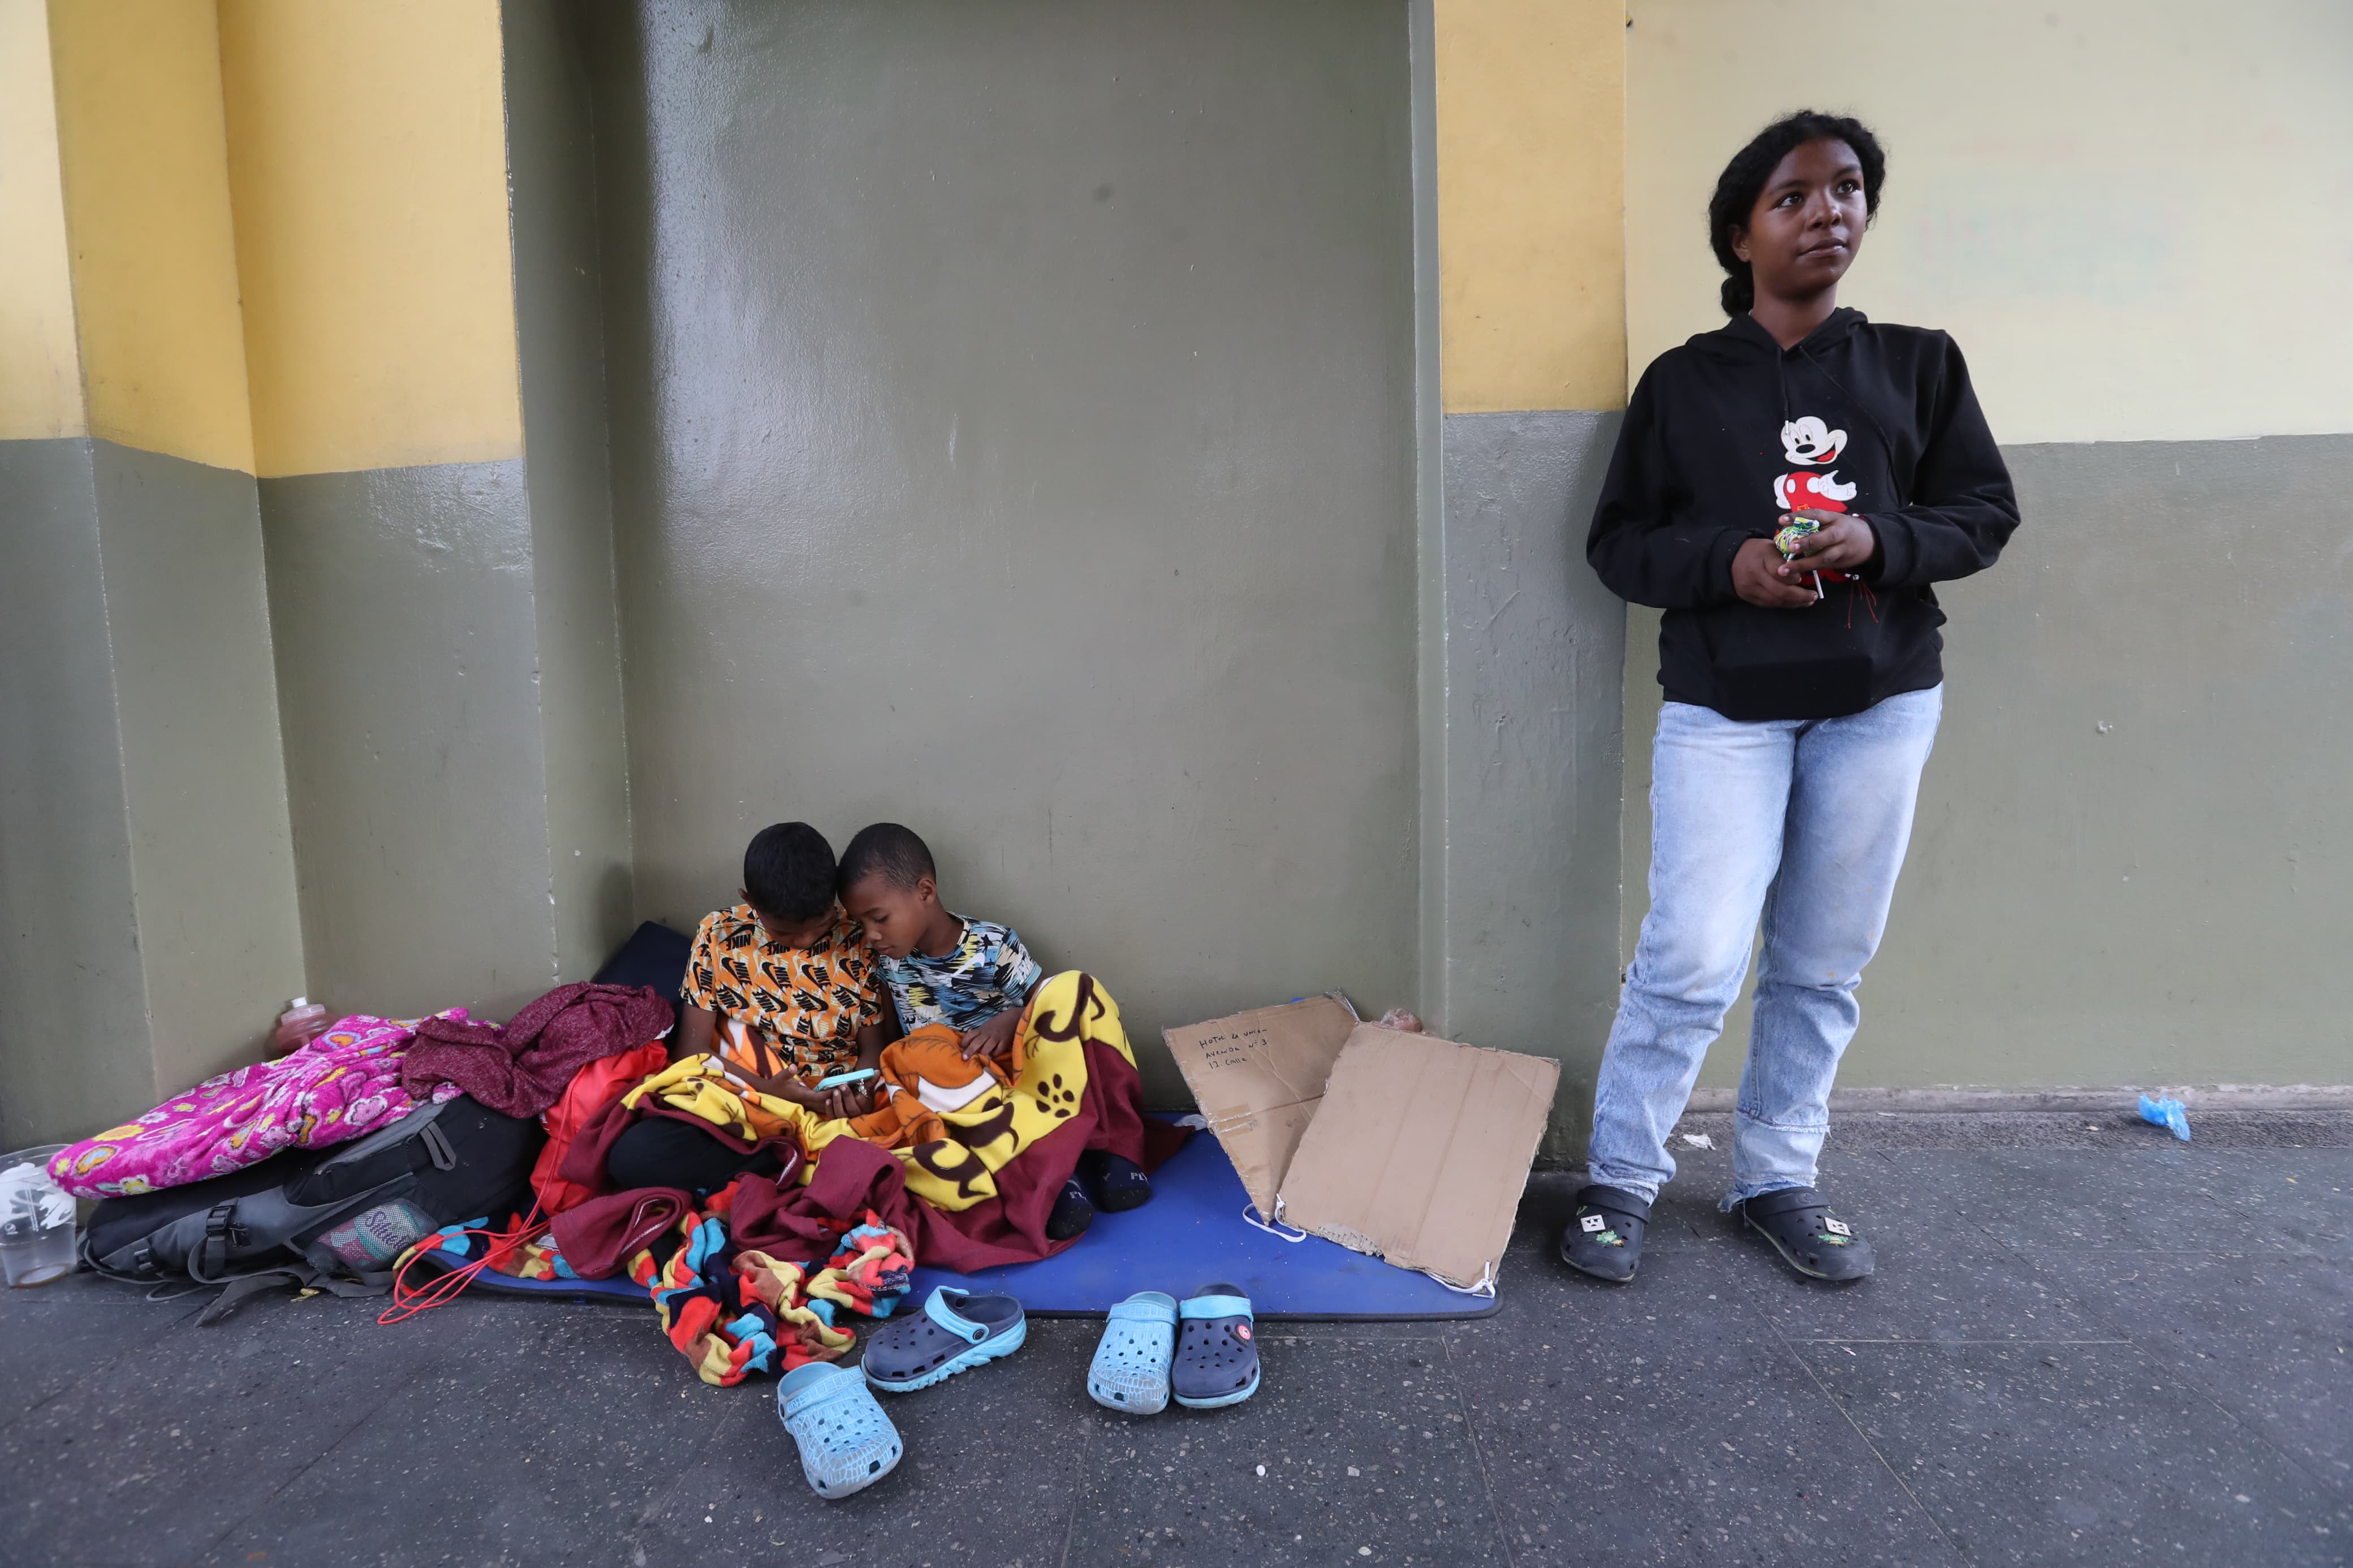 Una familia de migrantes venezolanos vende algunos artículos en el Paseo de la Sexta de la Ciudad de Guatemala para agenciarse de fondos y continuar su travesía a Estados Unidos. (Foto Prensa Libre: Maria Reneé Barrientos).